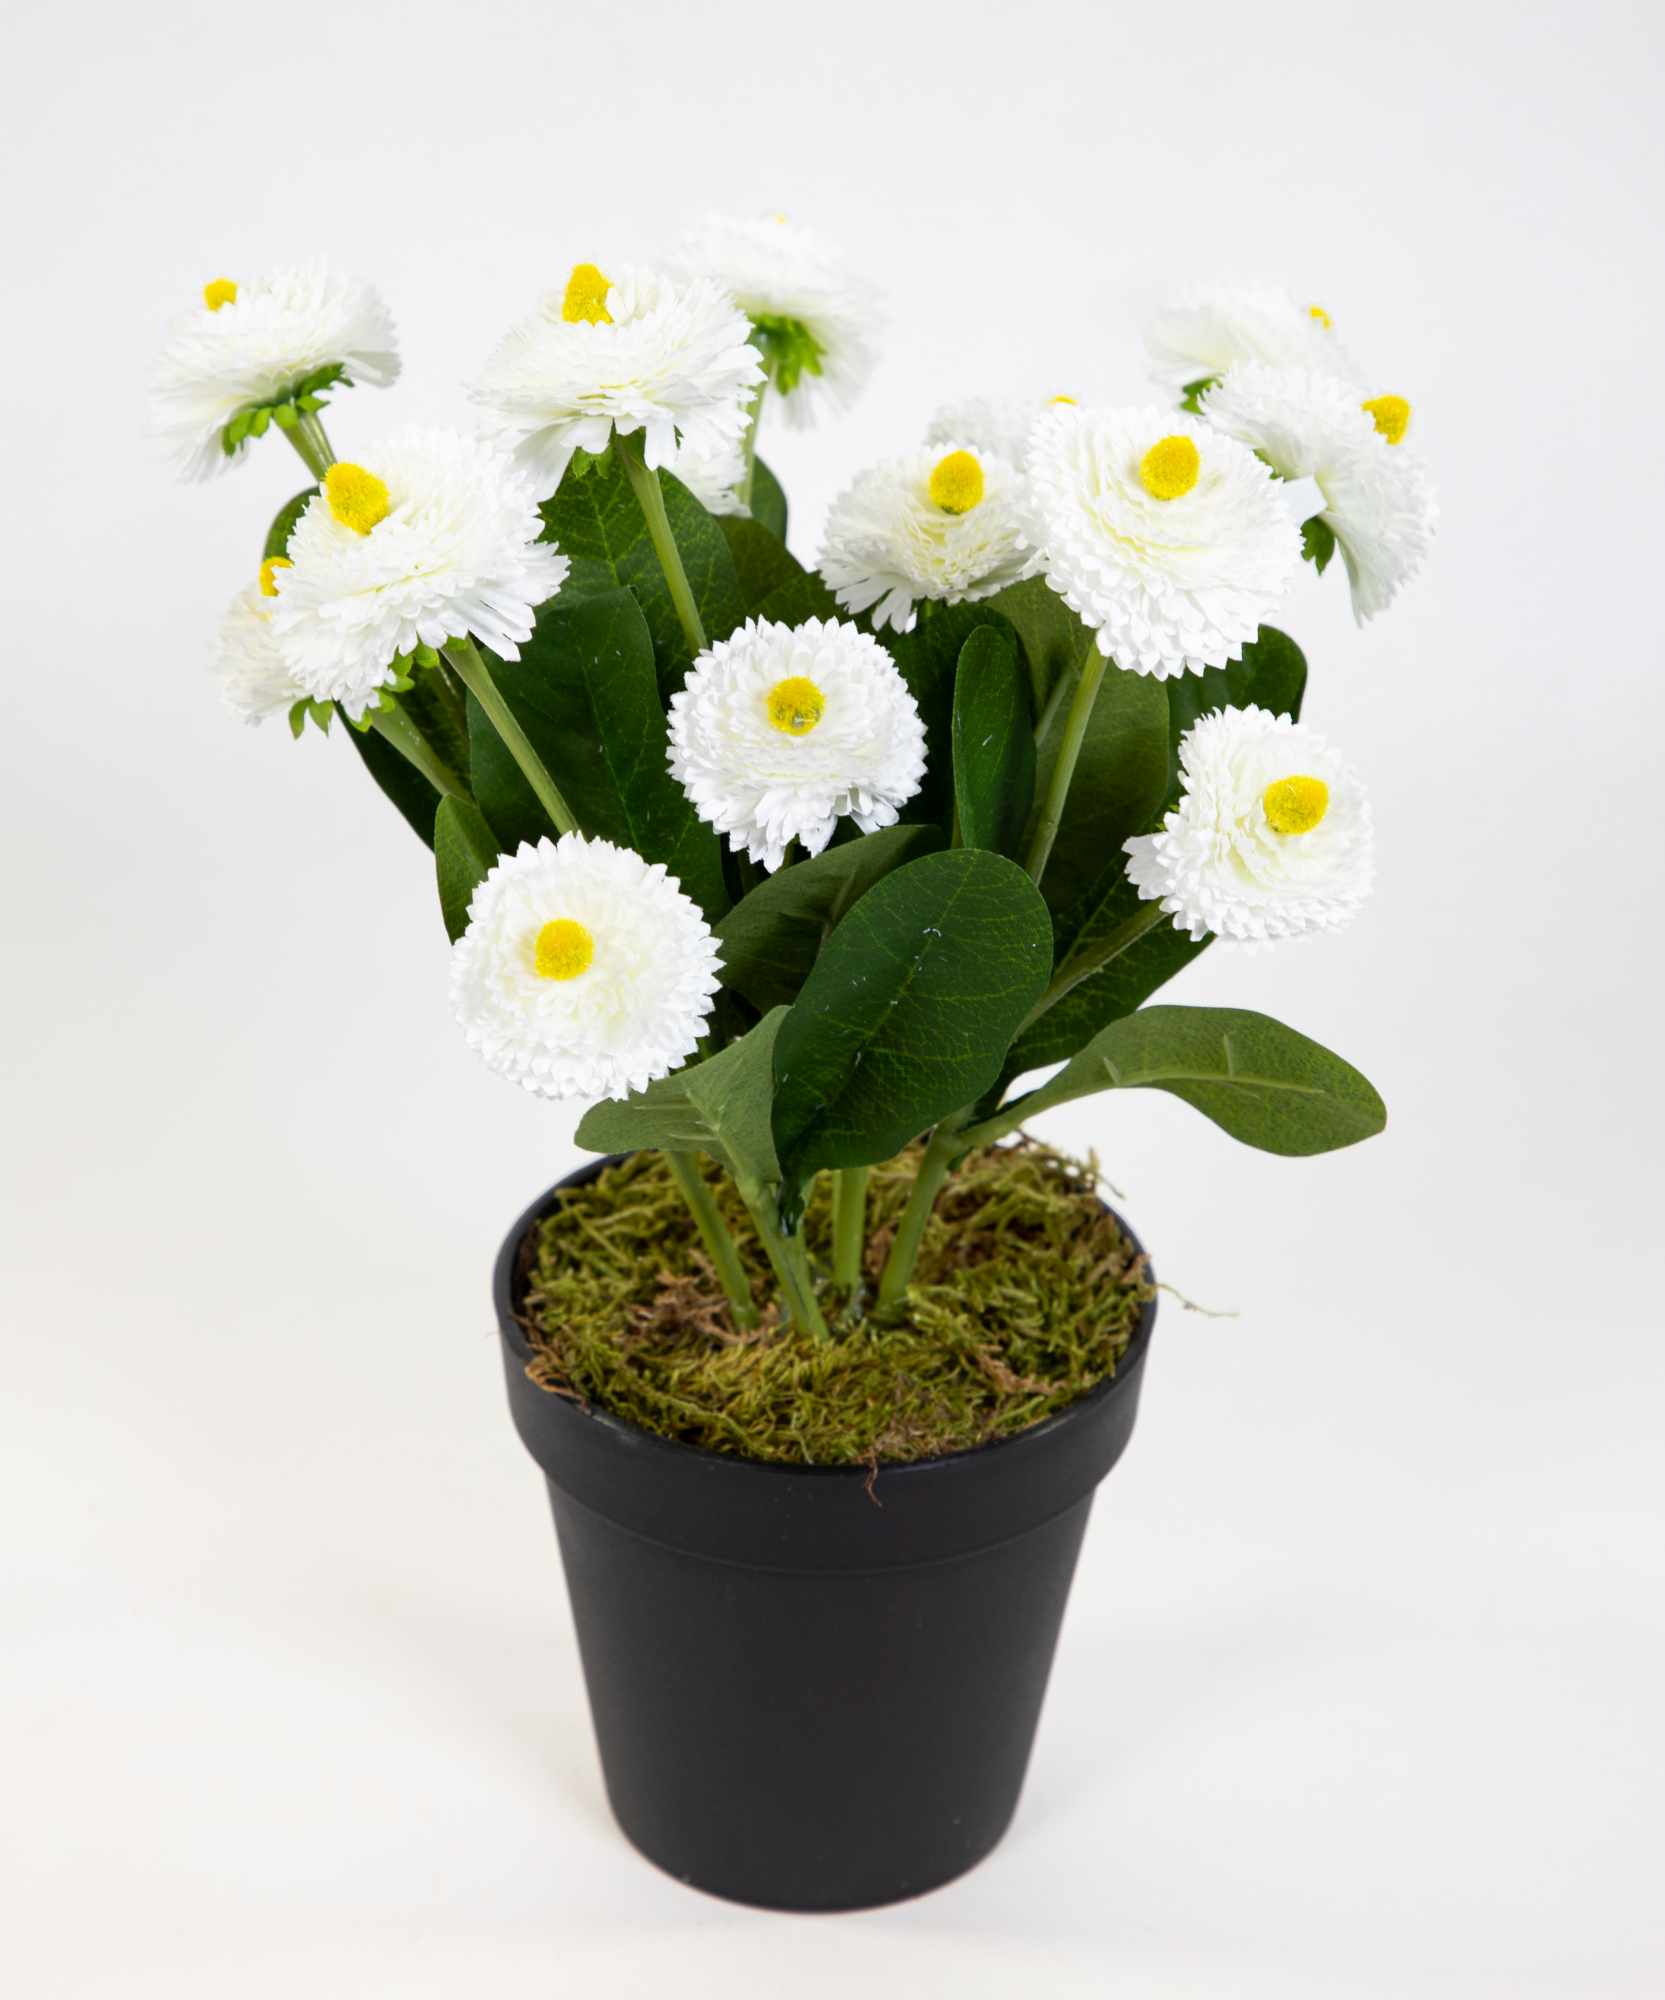 Bellispflanze / Bellis 28cm weiß im Topf DP Kunstblumen künstliche Bellis Blumen Gänseblümchen